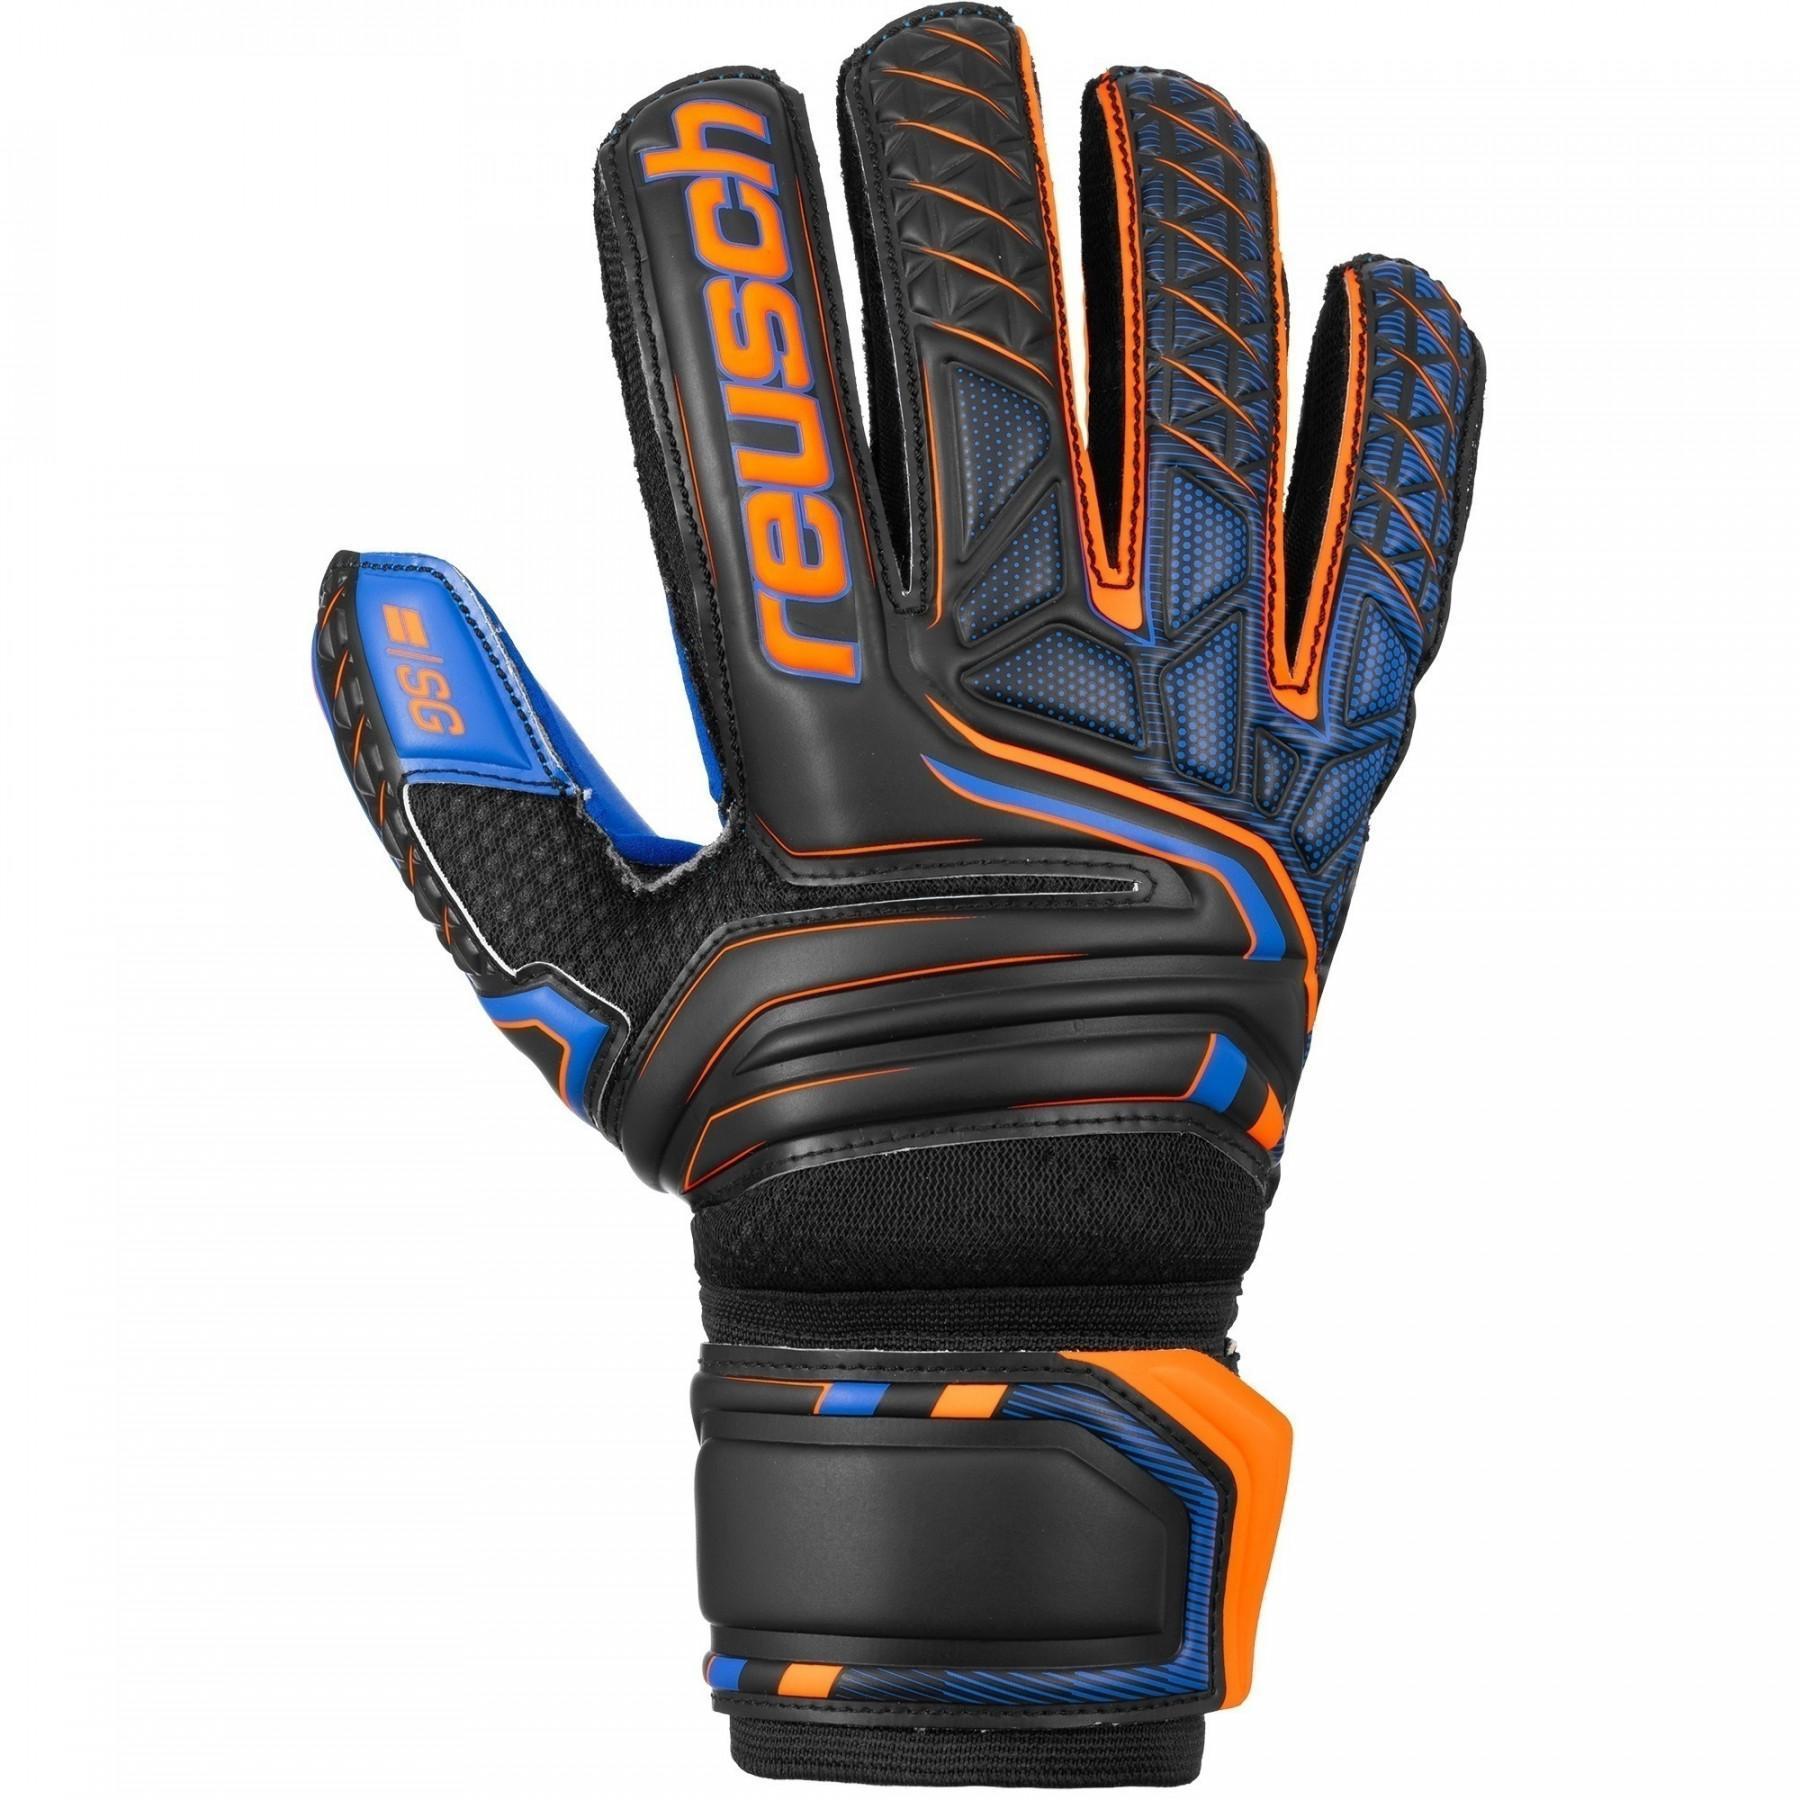 Goalkeeper gloves Reusch Attrakt SG Extra Finger Support